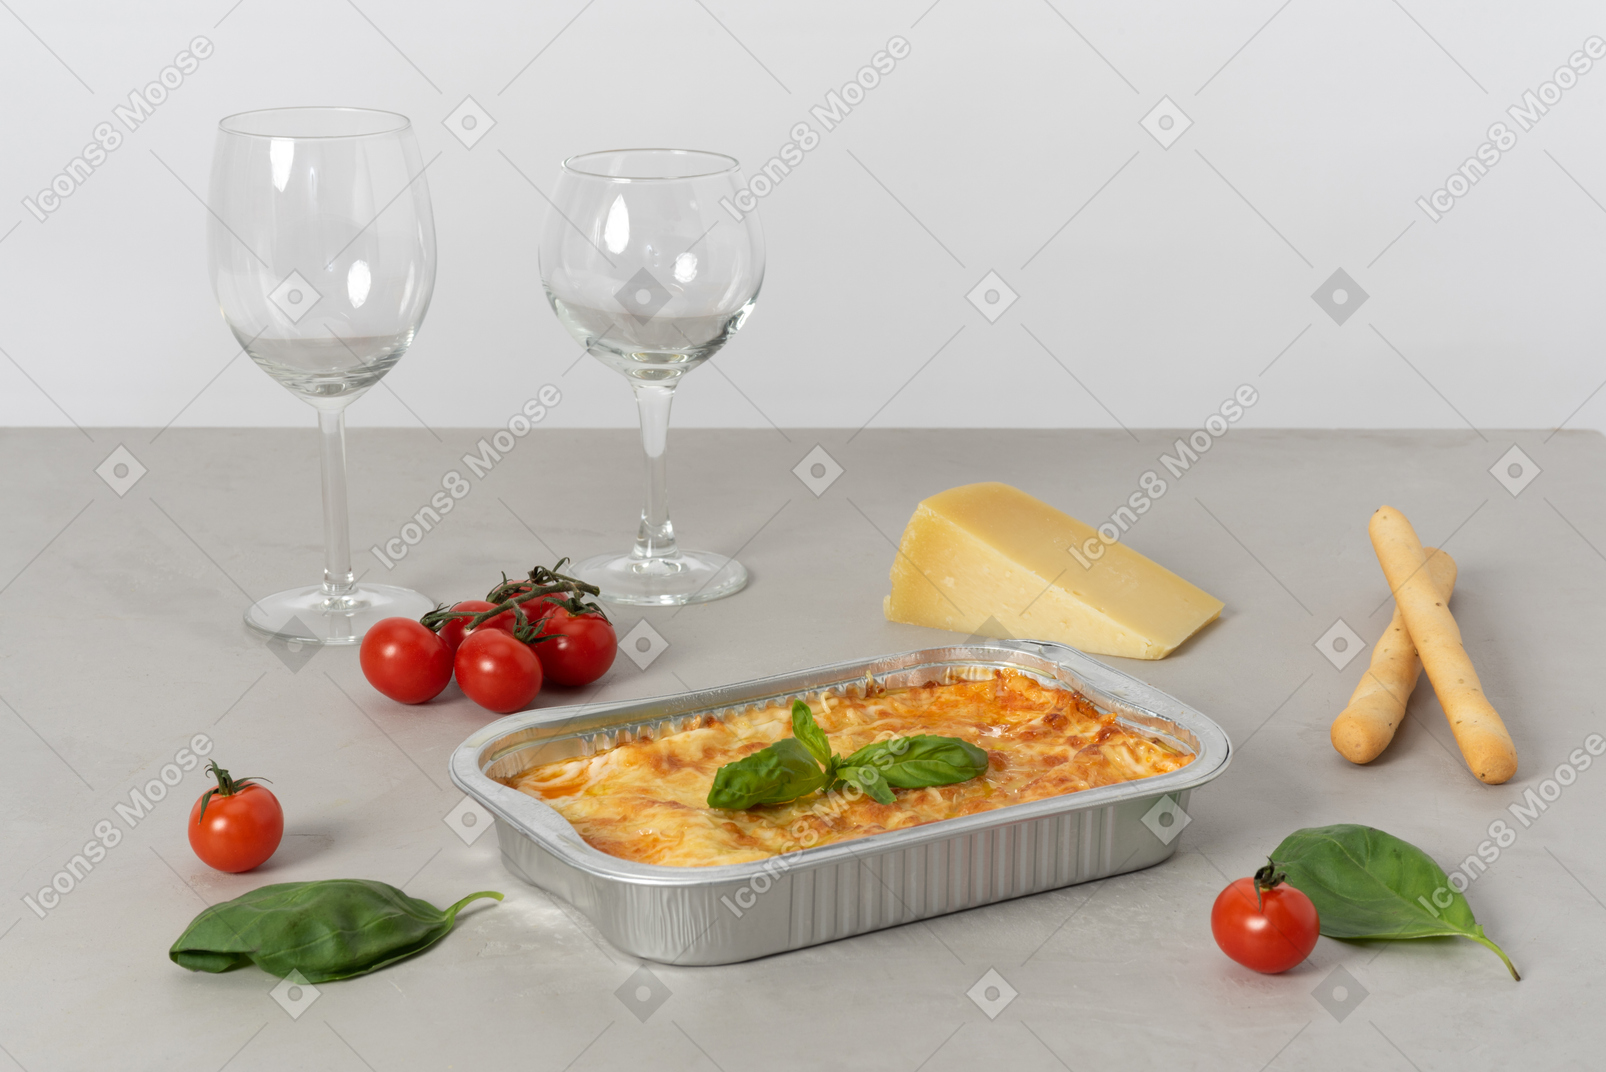 このディナーはイタリアの雰囲気についてです